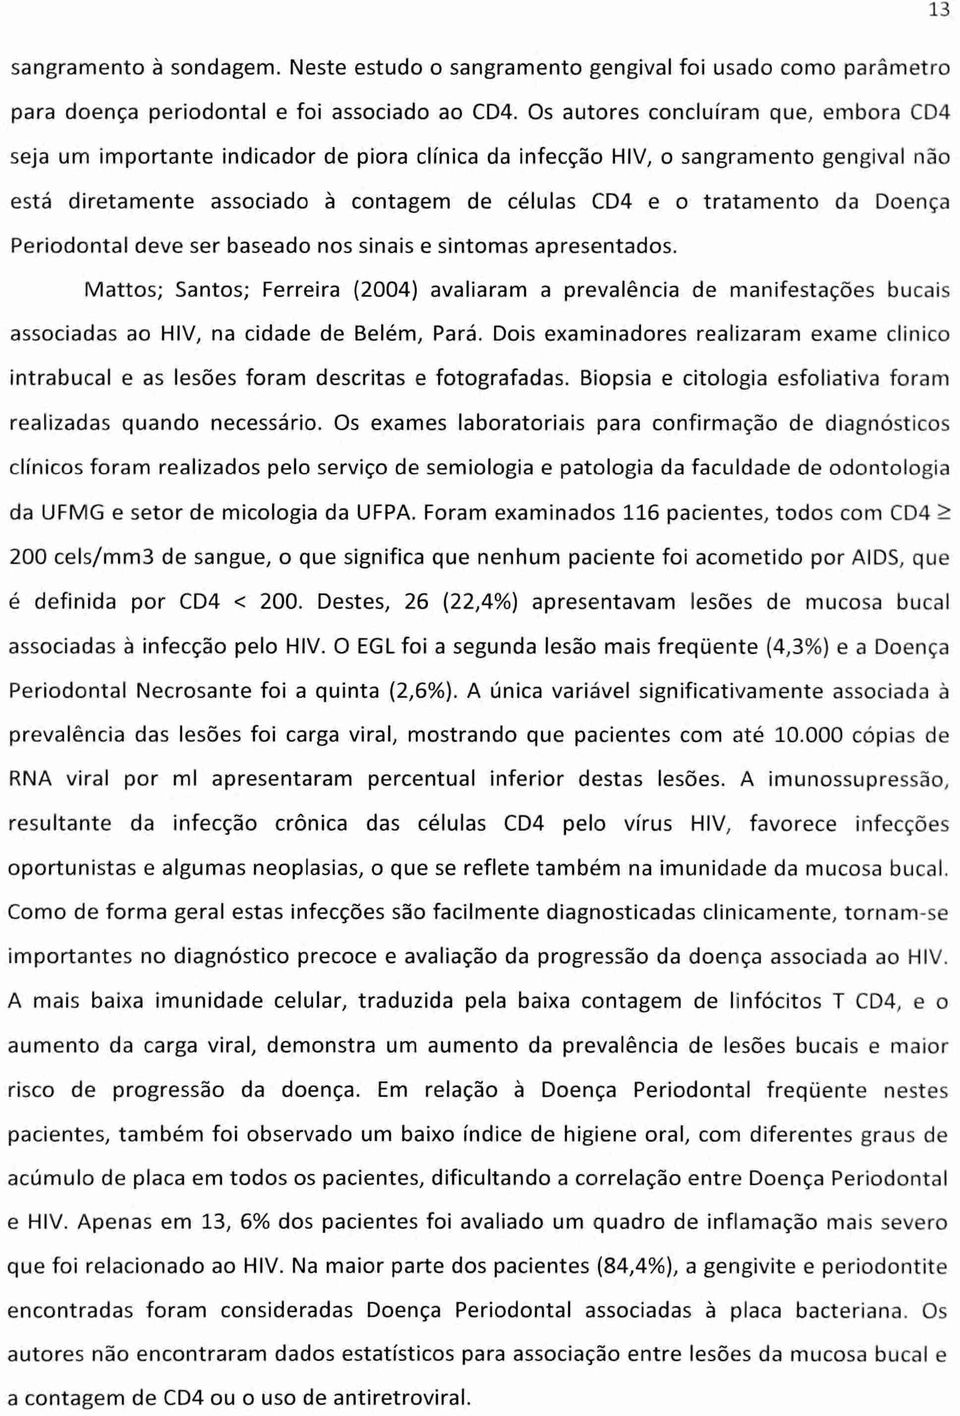 Doença Periodontal deve ser baseado nos sinais e sintomas apresentados. Mattos; Santos; Ferreira (2004) avaliaram a prevalência de manifestações bucais associadas ao HIV, na cidade de Belém, Pará.